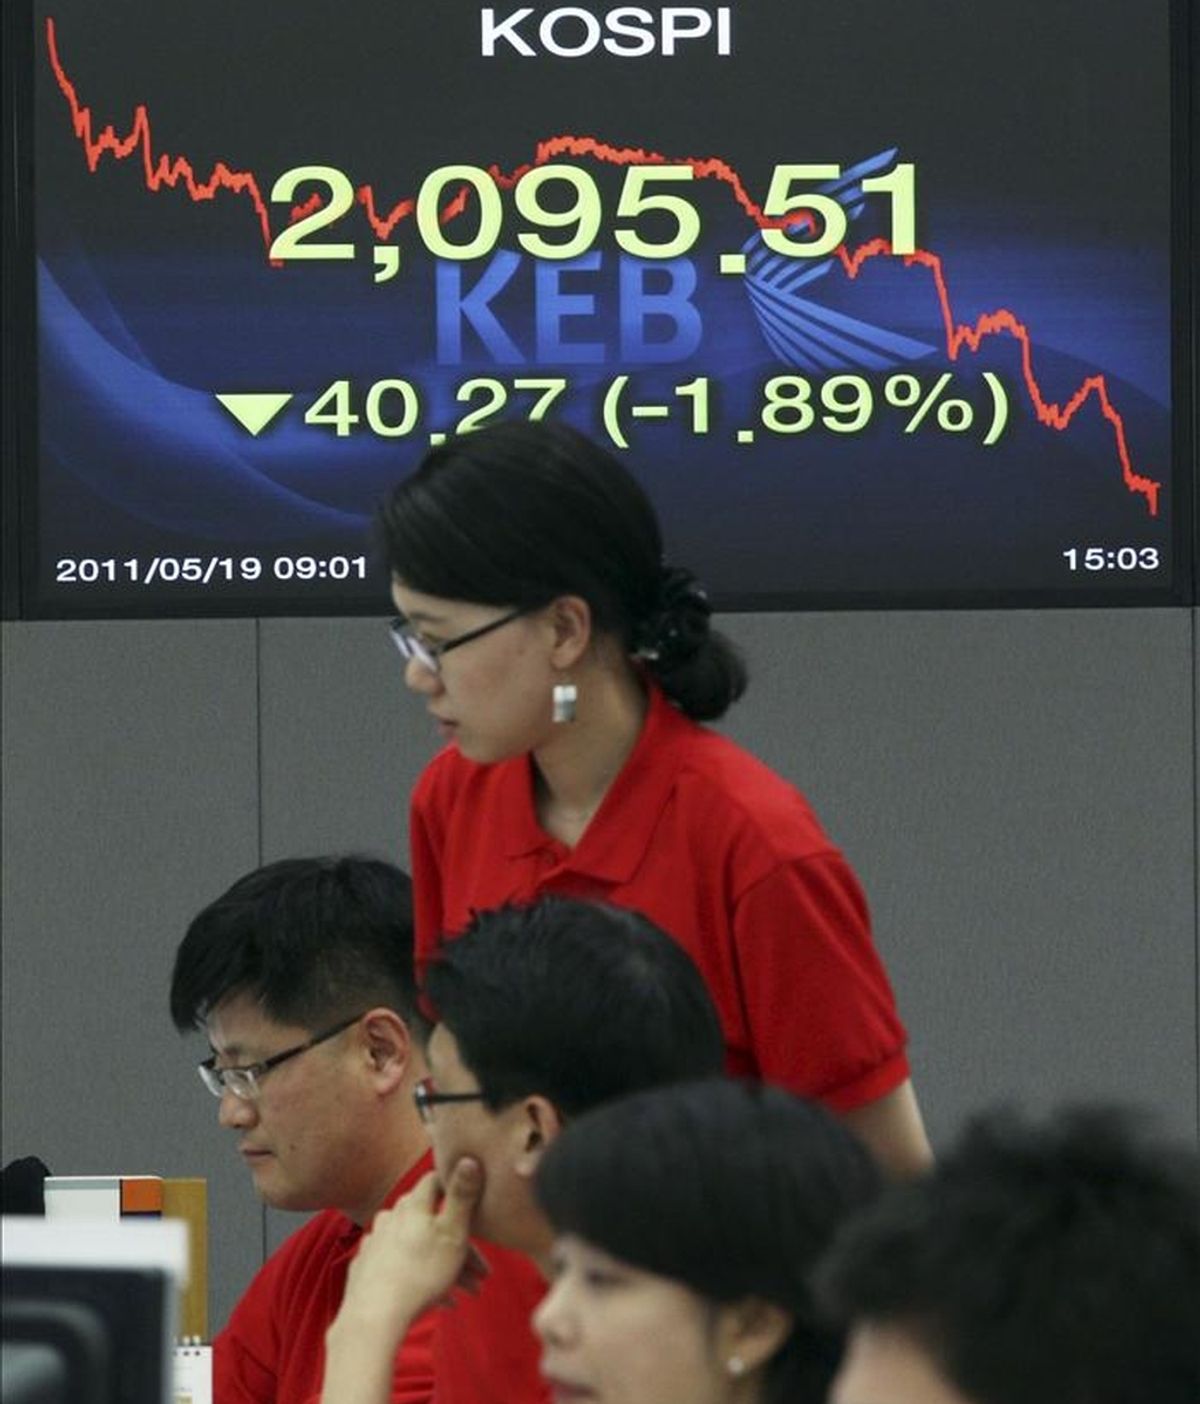 Corredores de bolsa trabajan en el parqué surcoreano bajo una pantalla que muestra los valores del índice Kospi. EFE/Archivo